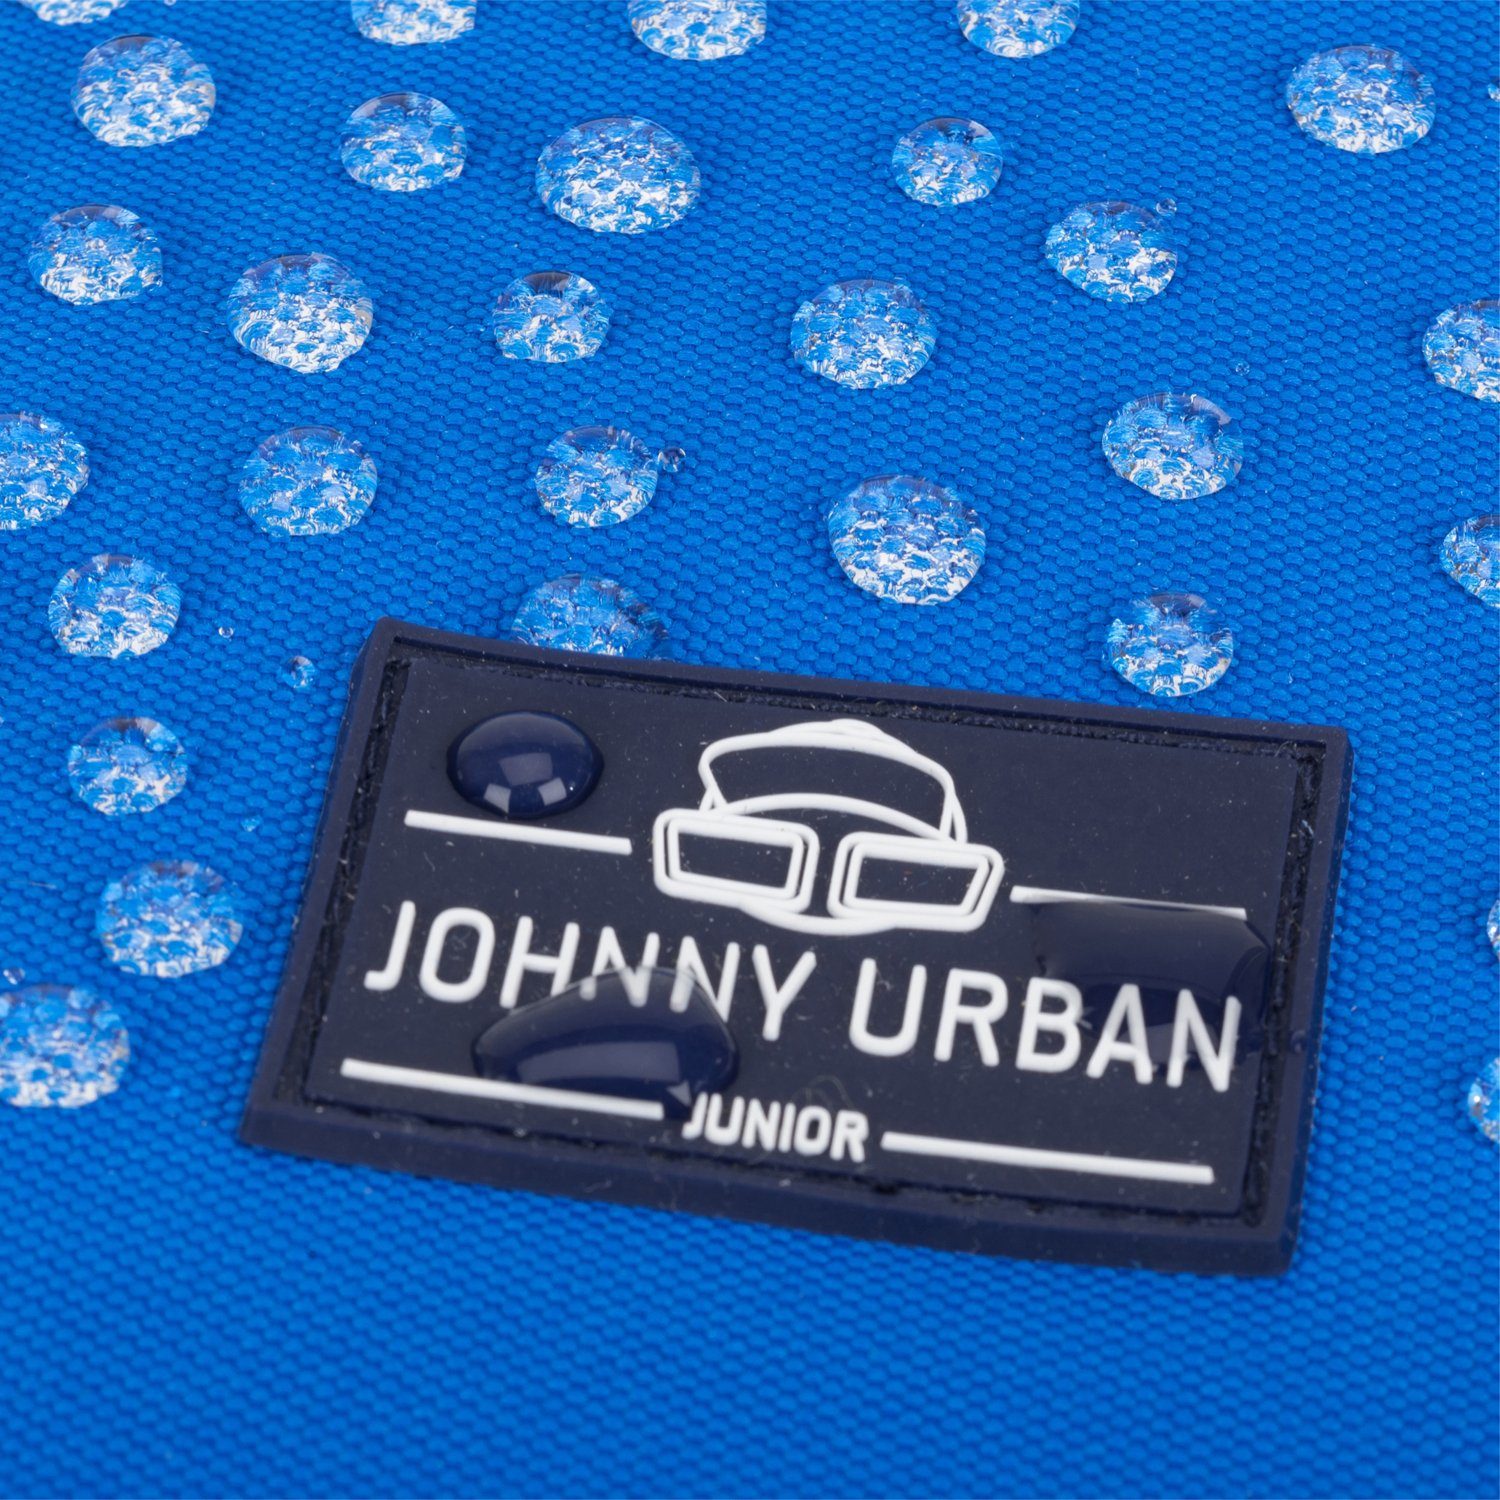 Kinder Liam Mädchen Rucksack blau Wasserabweisend Recyceltes Johnny Polsterung, Kinderrucksack Junior Weiche Material, Jungen, Urban